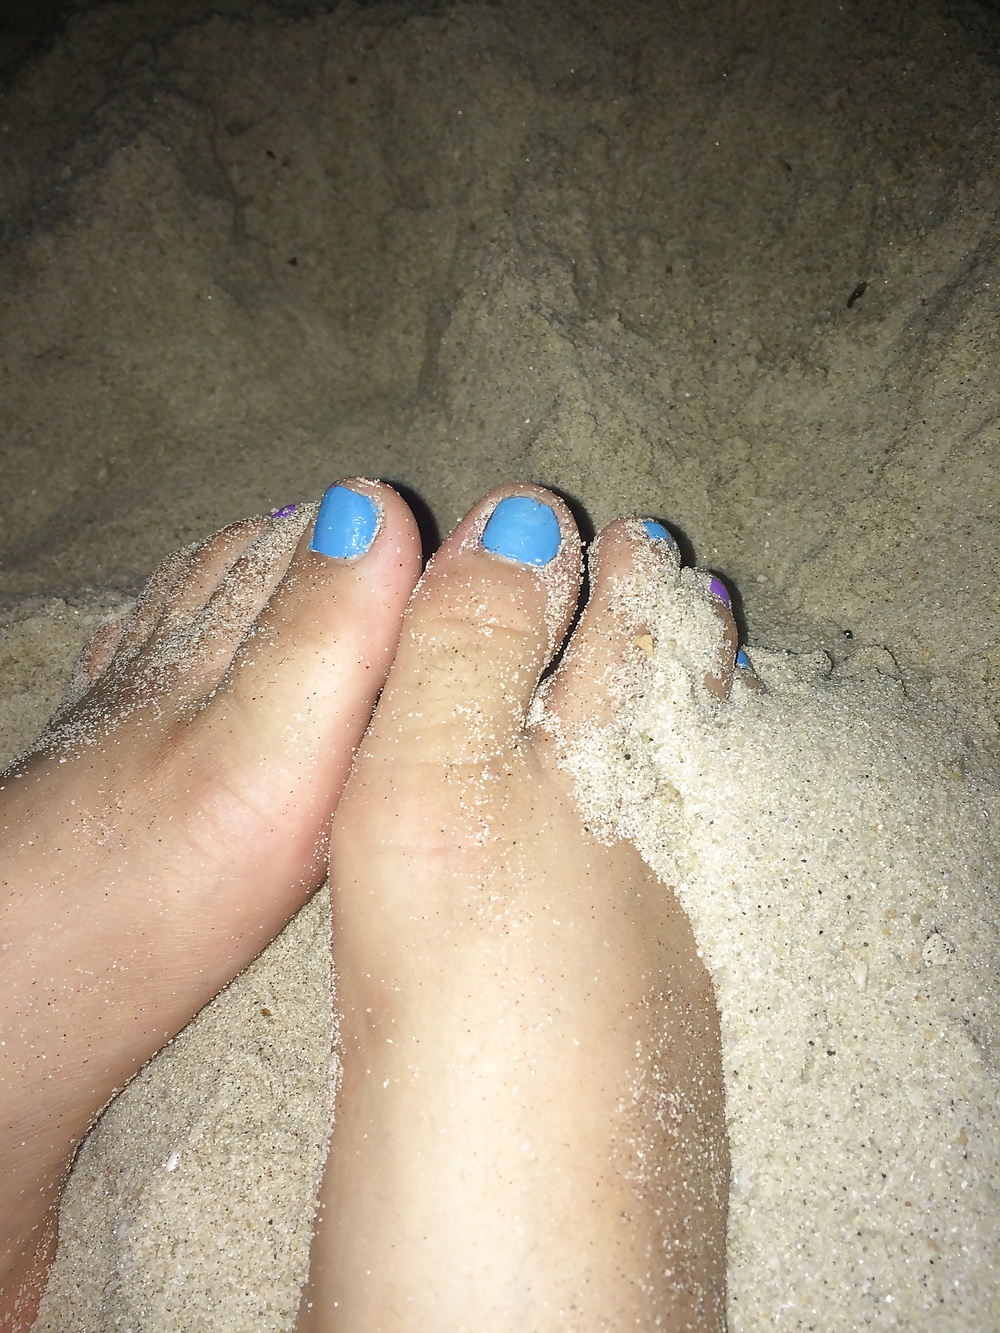 Free My Latina's feet photos